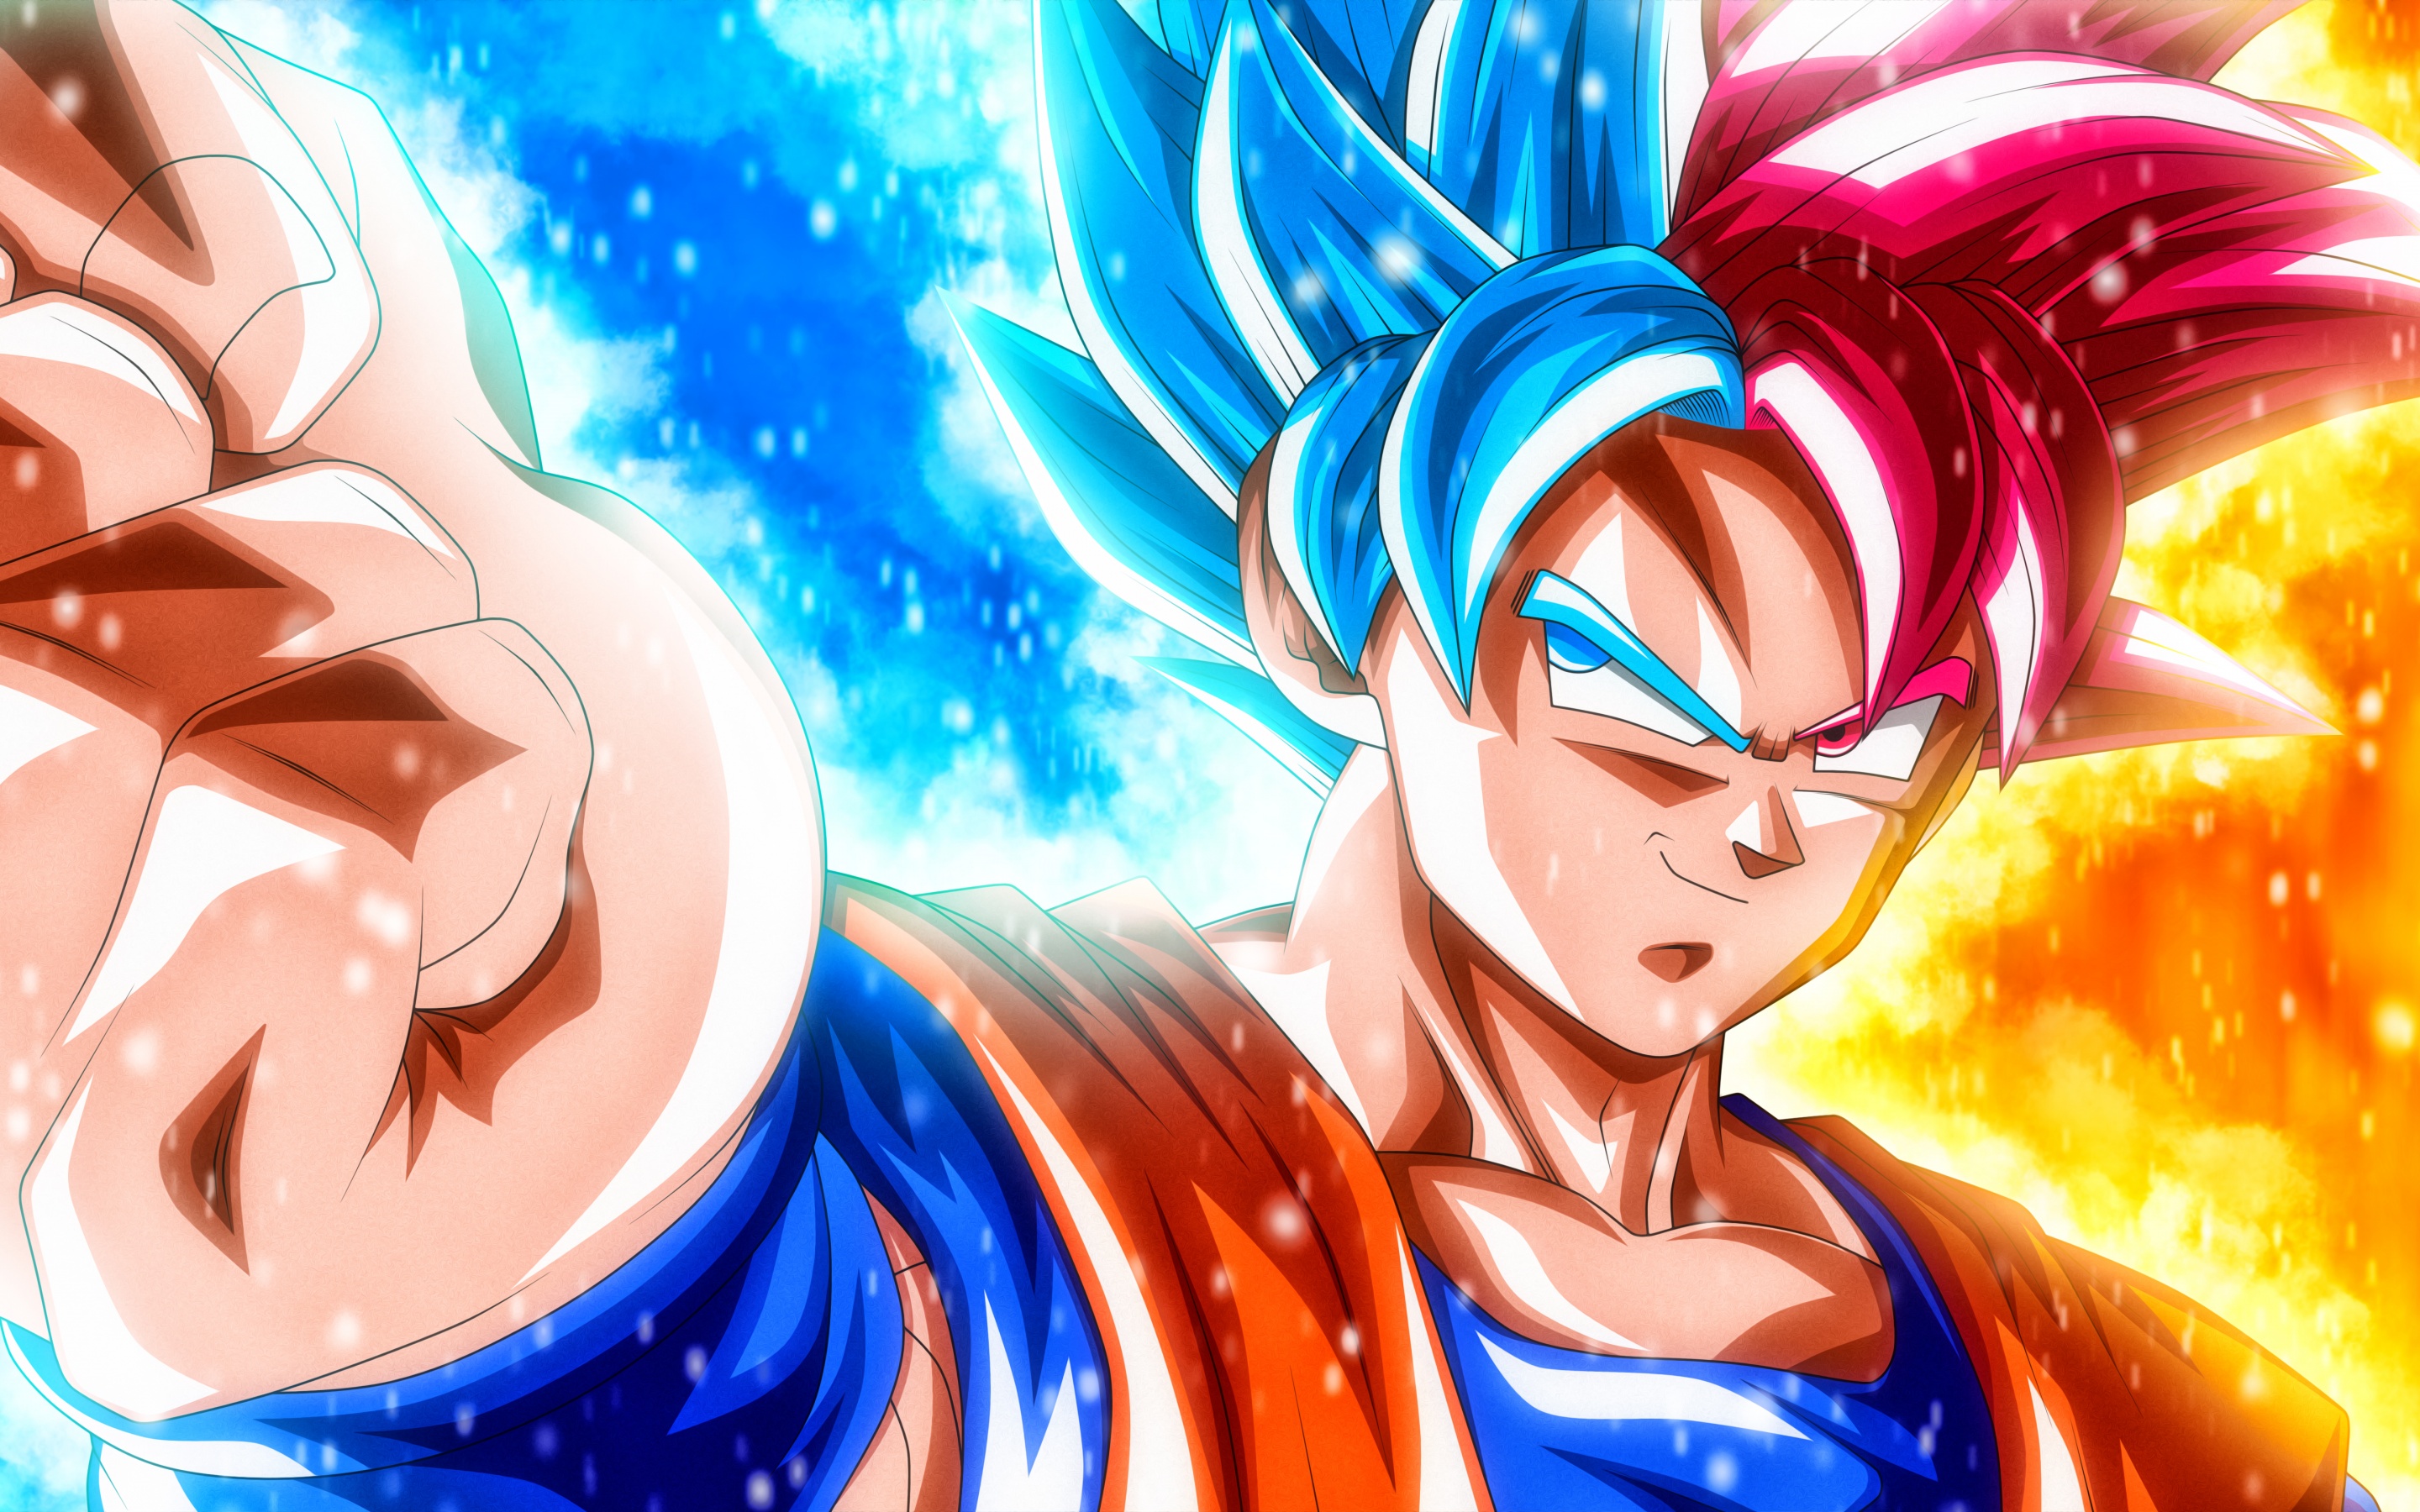 Super Saiyan Blue Goku Hair - Dragon Ball Z Dokkan Battle Wiki - wide 9